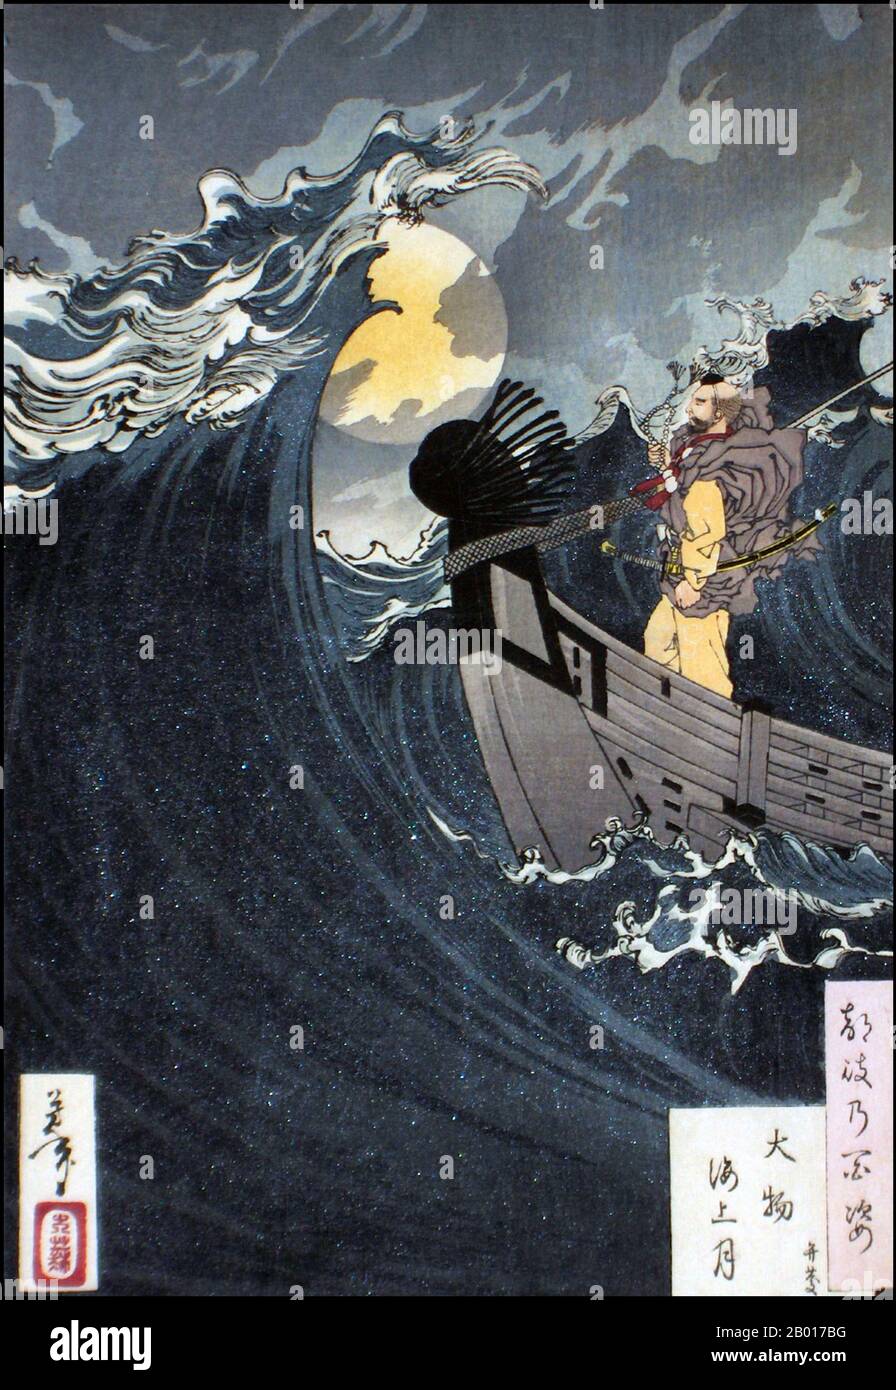 Japan: 'Mond über dem Meer in der Daimotsu Bay'. Ukiyo-e Holzschnitt aus der Serie 'hundert Aspekte des Mondes' von Tsukioka Yoshitoshi (1839. - 9. Juni 1892), 1890. Das Bild zeigt den Kriegermönch Musashibo Benkei, der nachts segelt. Tsukioka Yoshitoshi, auch Taiso Yoshitoshi genannt, war ein japanischer Künstler. Er ist weithin als der letzte große Meister des japanischen Holzschnitts Ukiyo-e anerkannt. Er gilt zudem als einer der größten Innovatoren der Form. Seine Karriere umfasste zwei Epochen – die letzten Jahre des feudalen Japans und die ersten Jahre des modernen Japans. Stockfoto